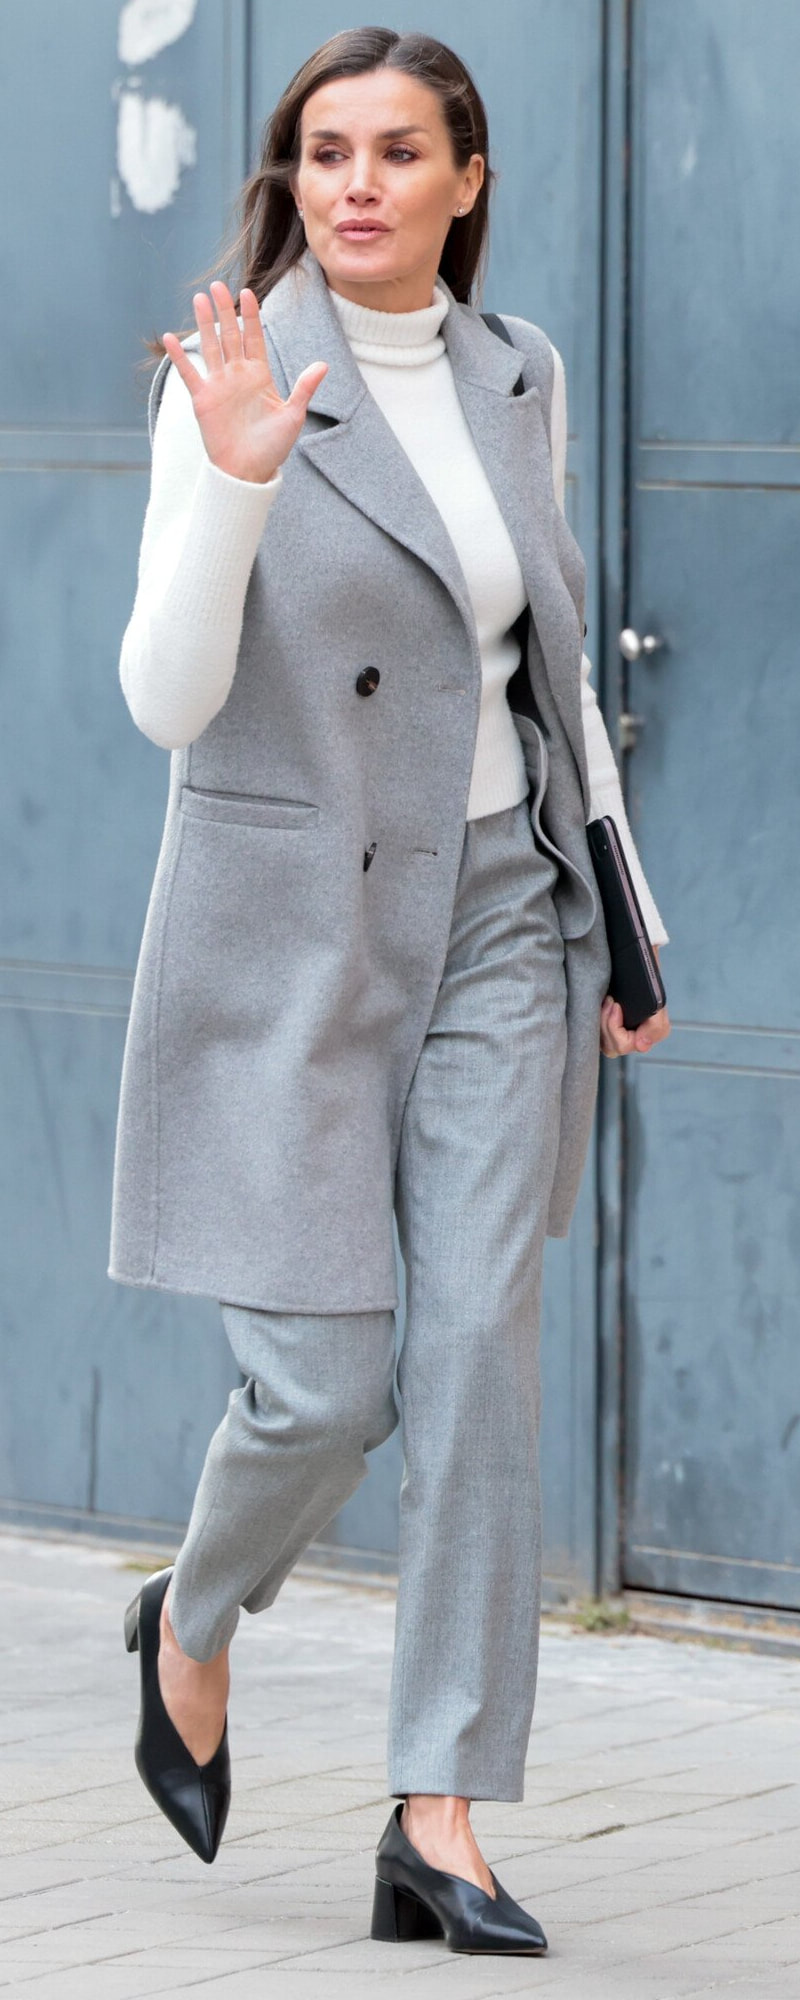 Roberto Verino Long Wool Vest in Grey as seen on Queen Letizia